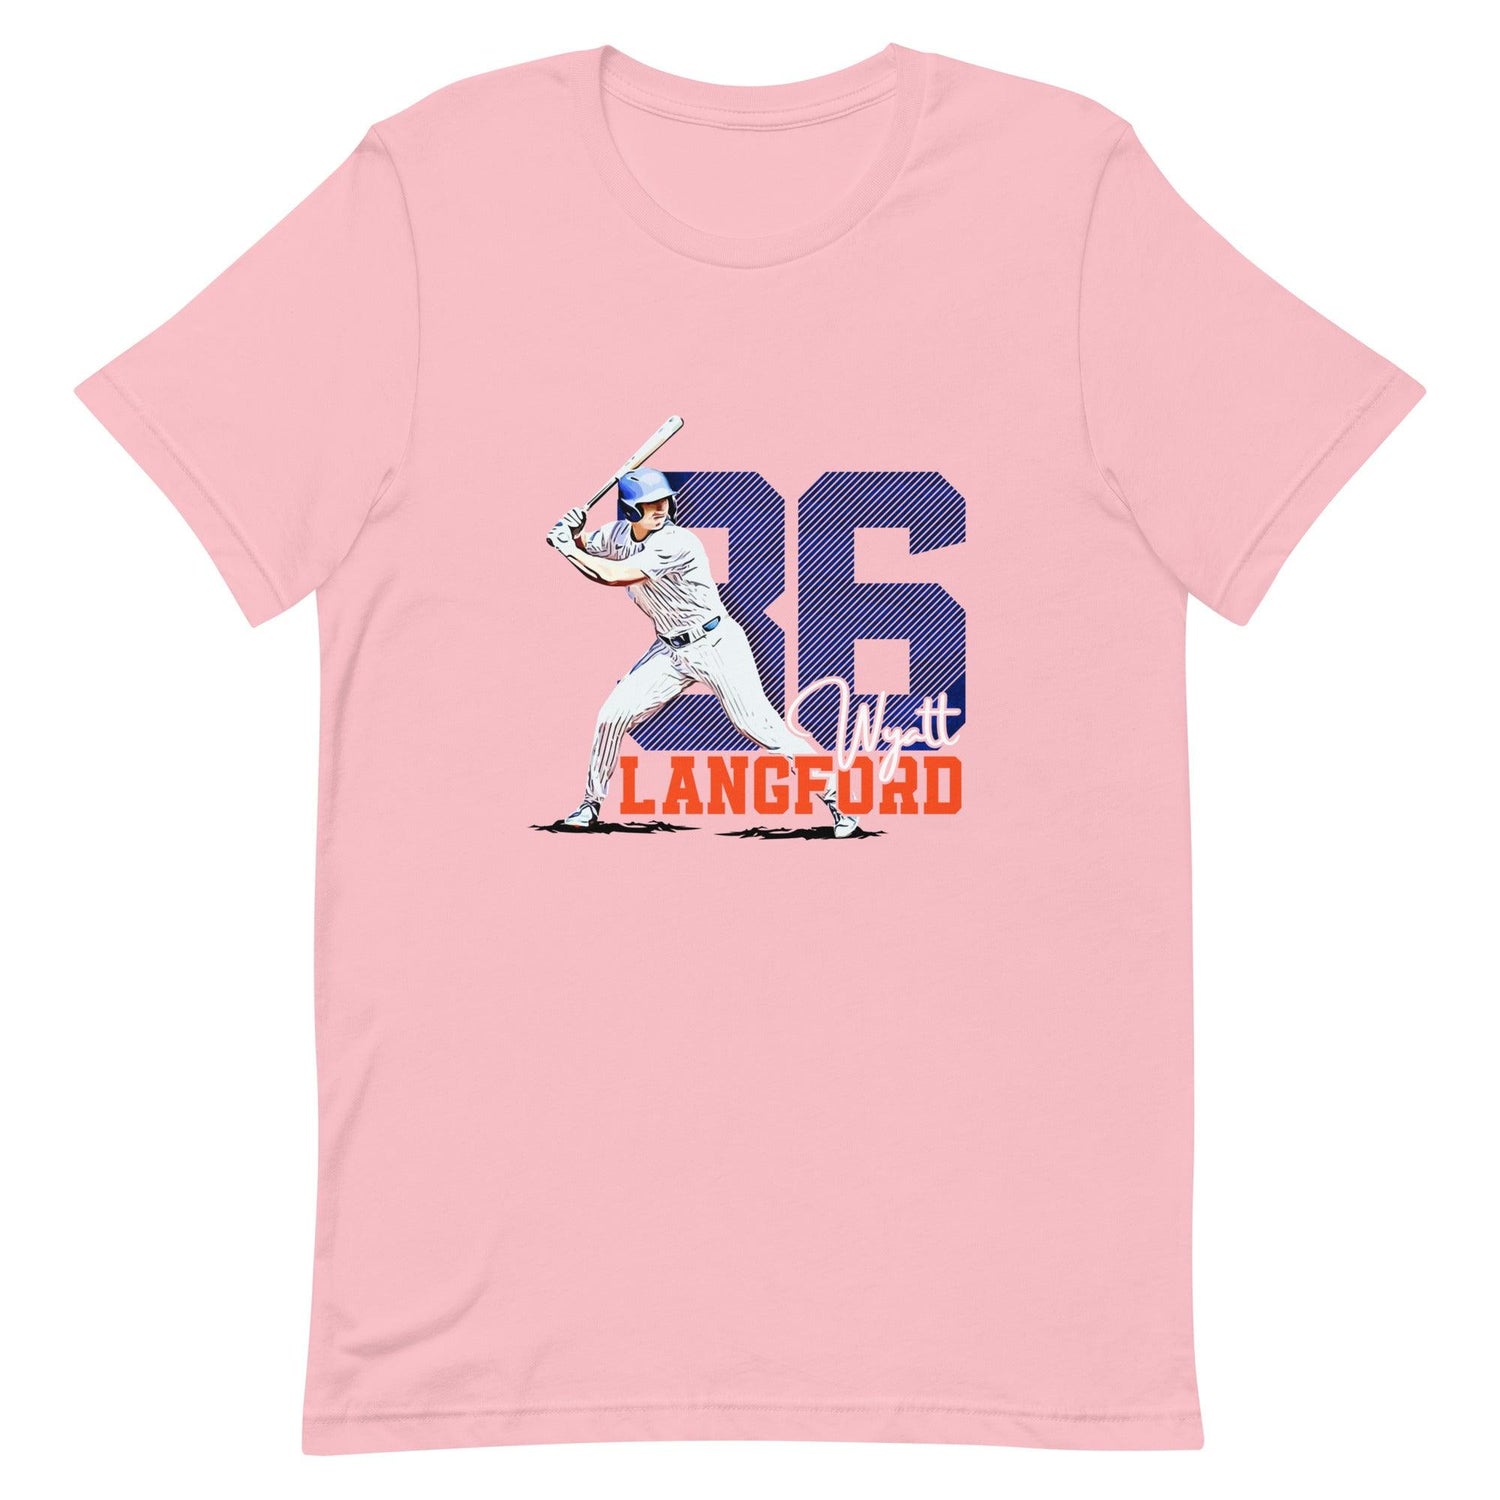 Wyatt Langford “Essential” t-shirt - Fan Arch